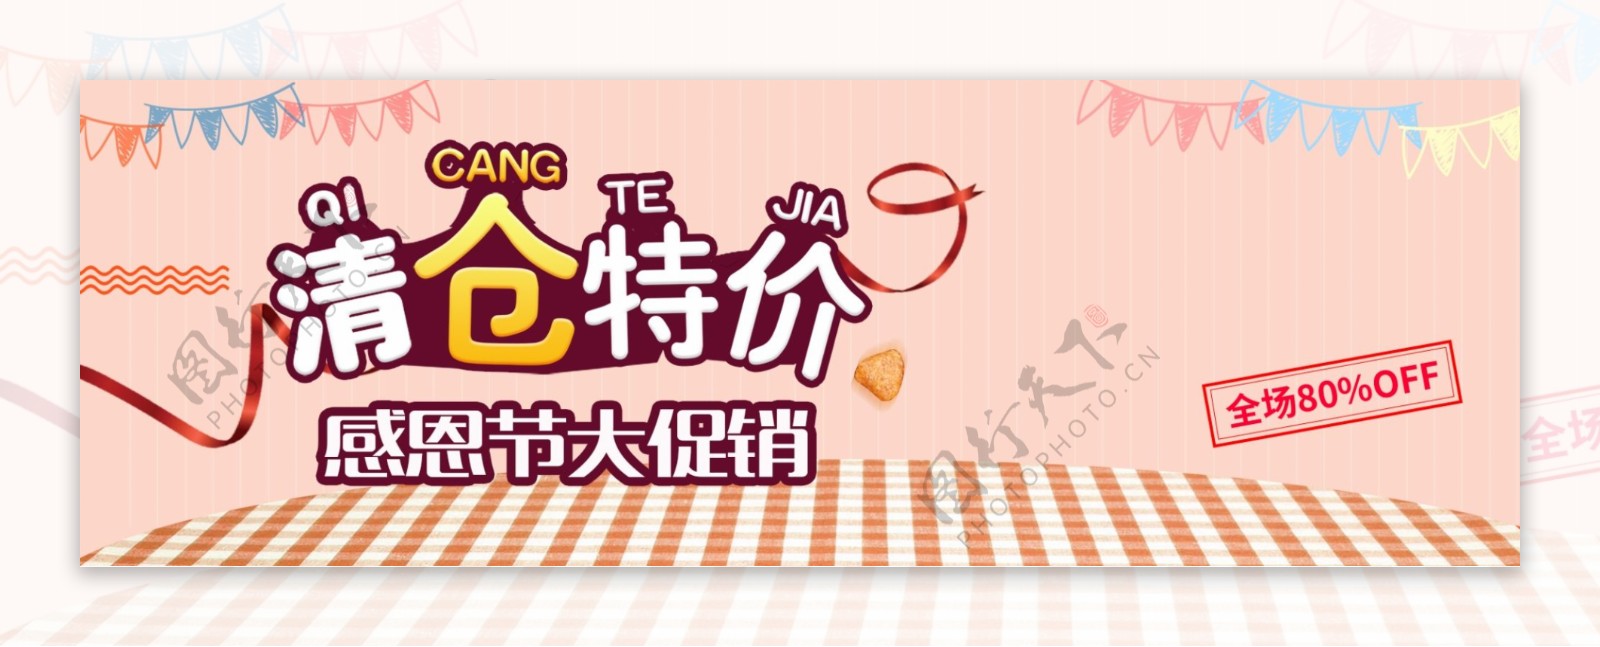 橘色温馨感恩节促销电商banner